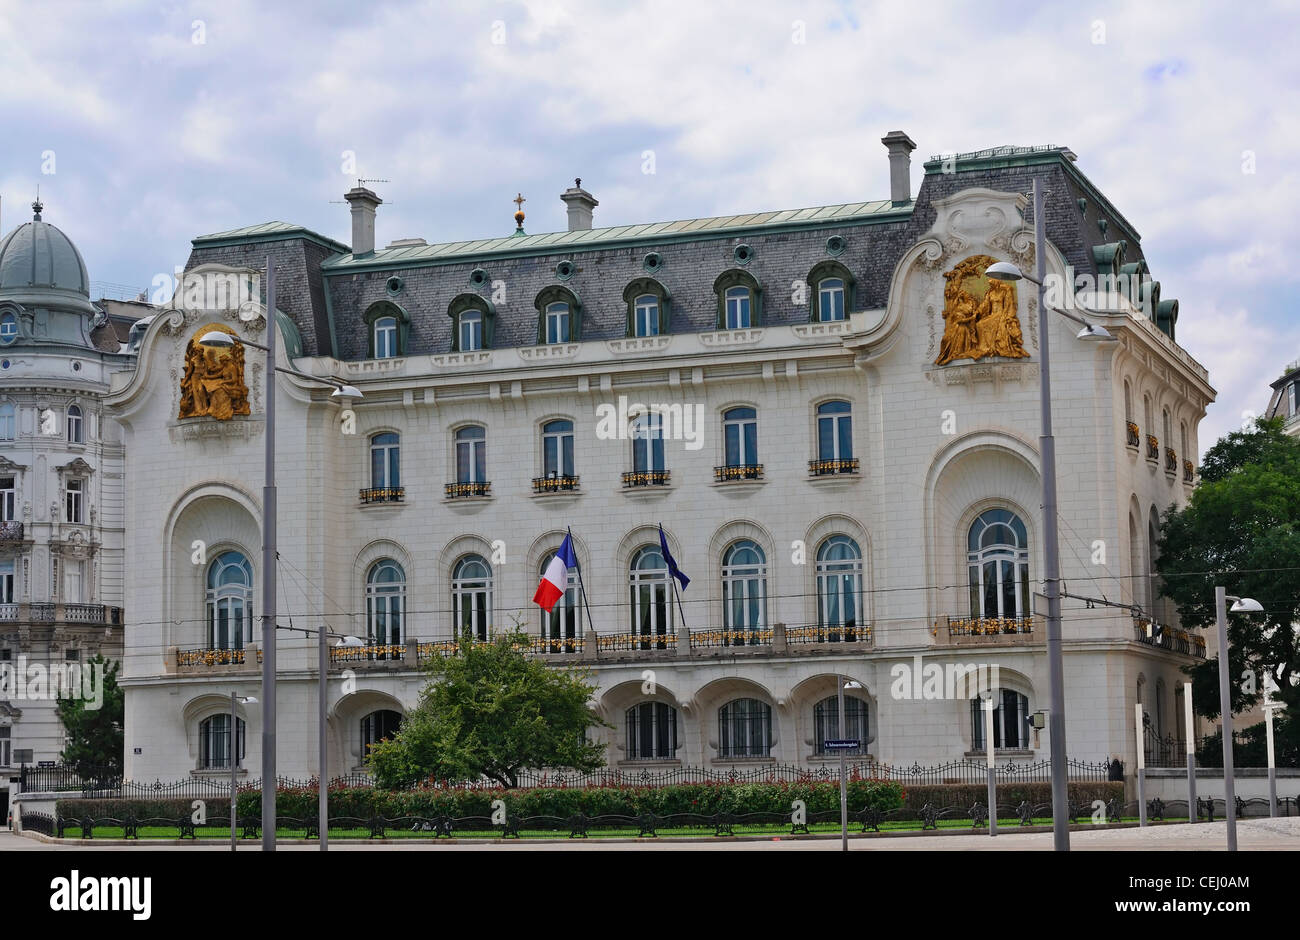 Vienna: Botschaft der Französischen Republik (Ambasciata della Repubblica francese) Foto Stock